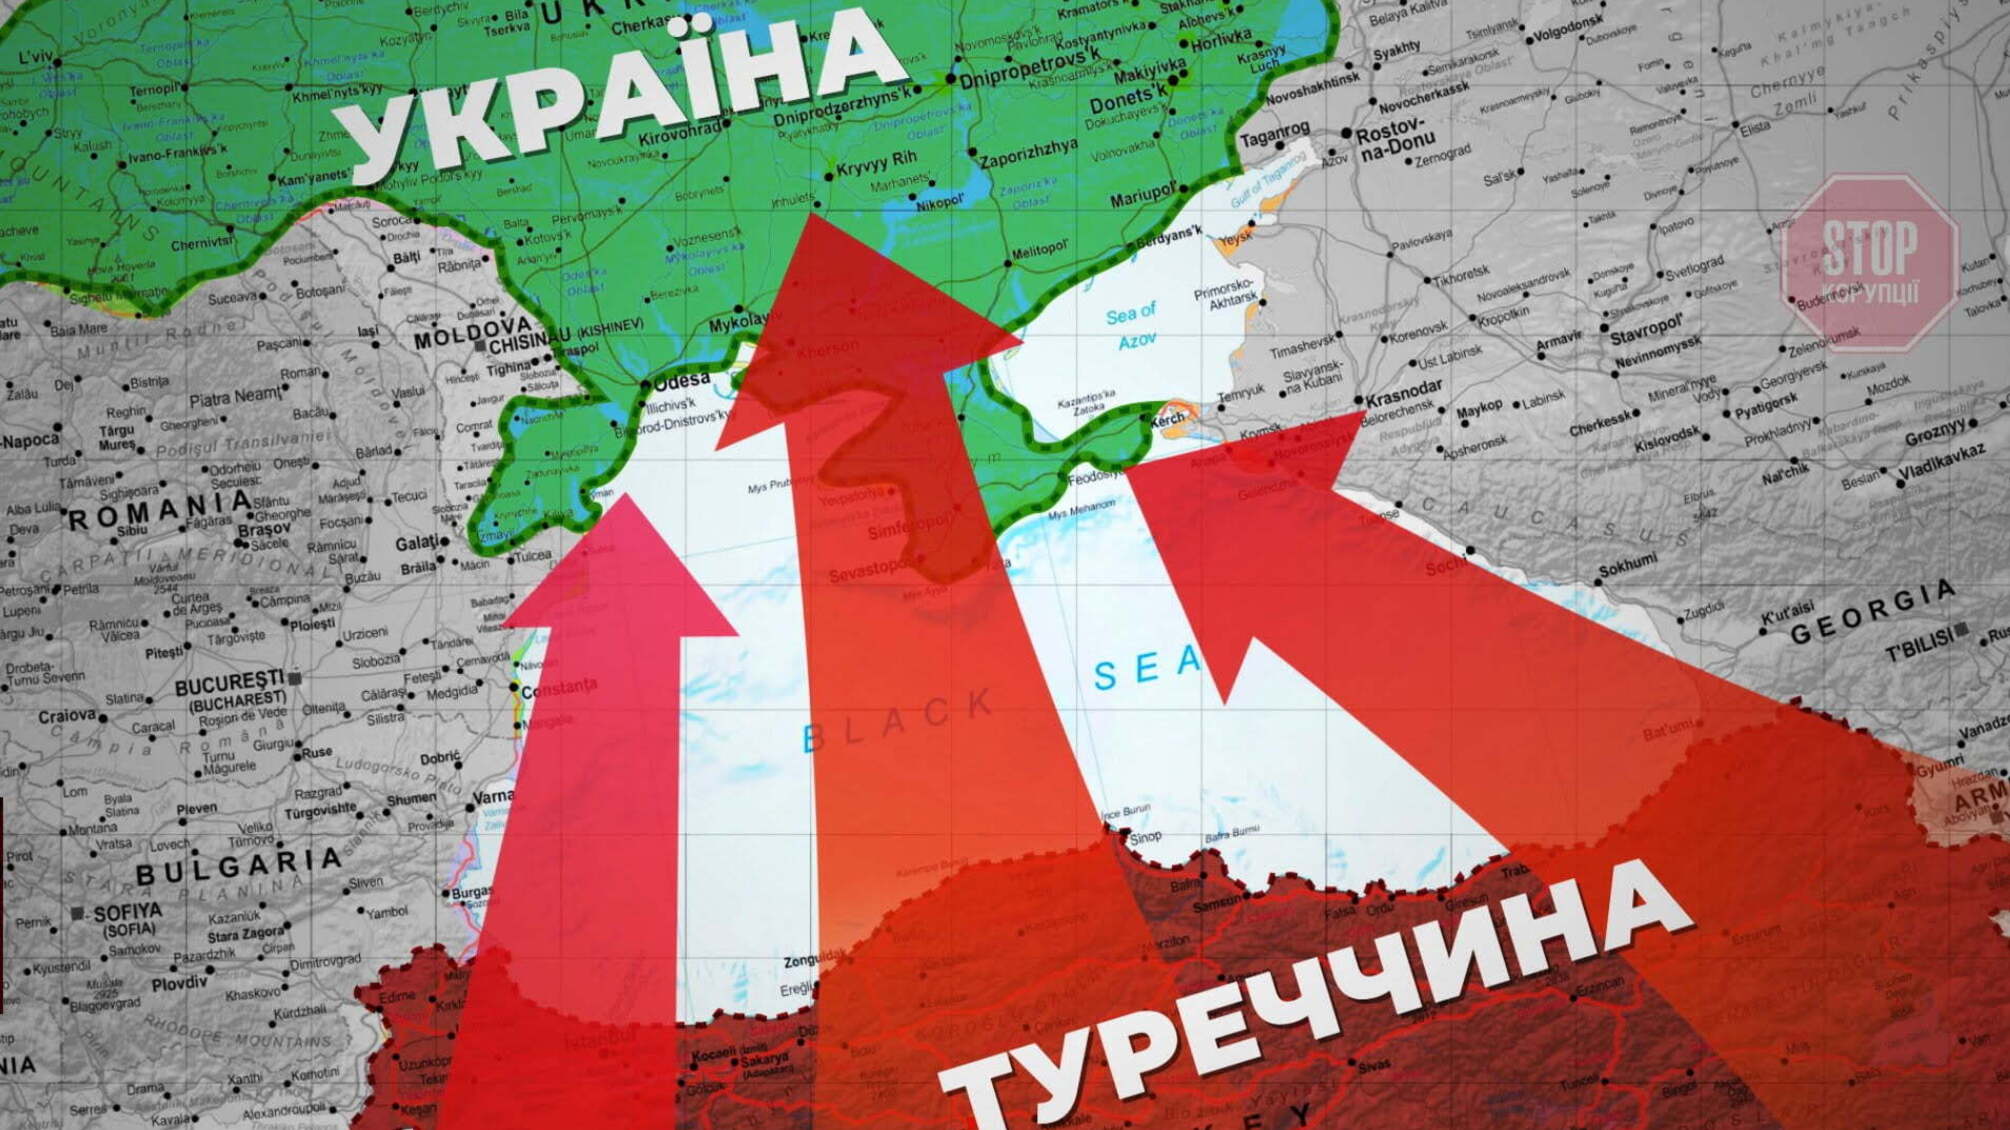 Містить шкідливі домішки й викликає екзему: в українських лабораторіях перевірили імпортний цемент з Туреччини